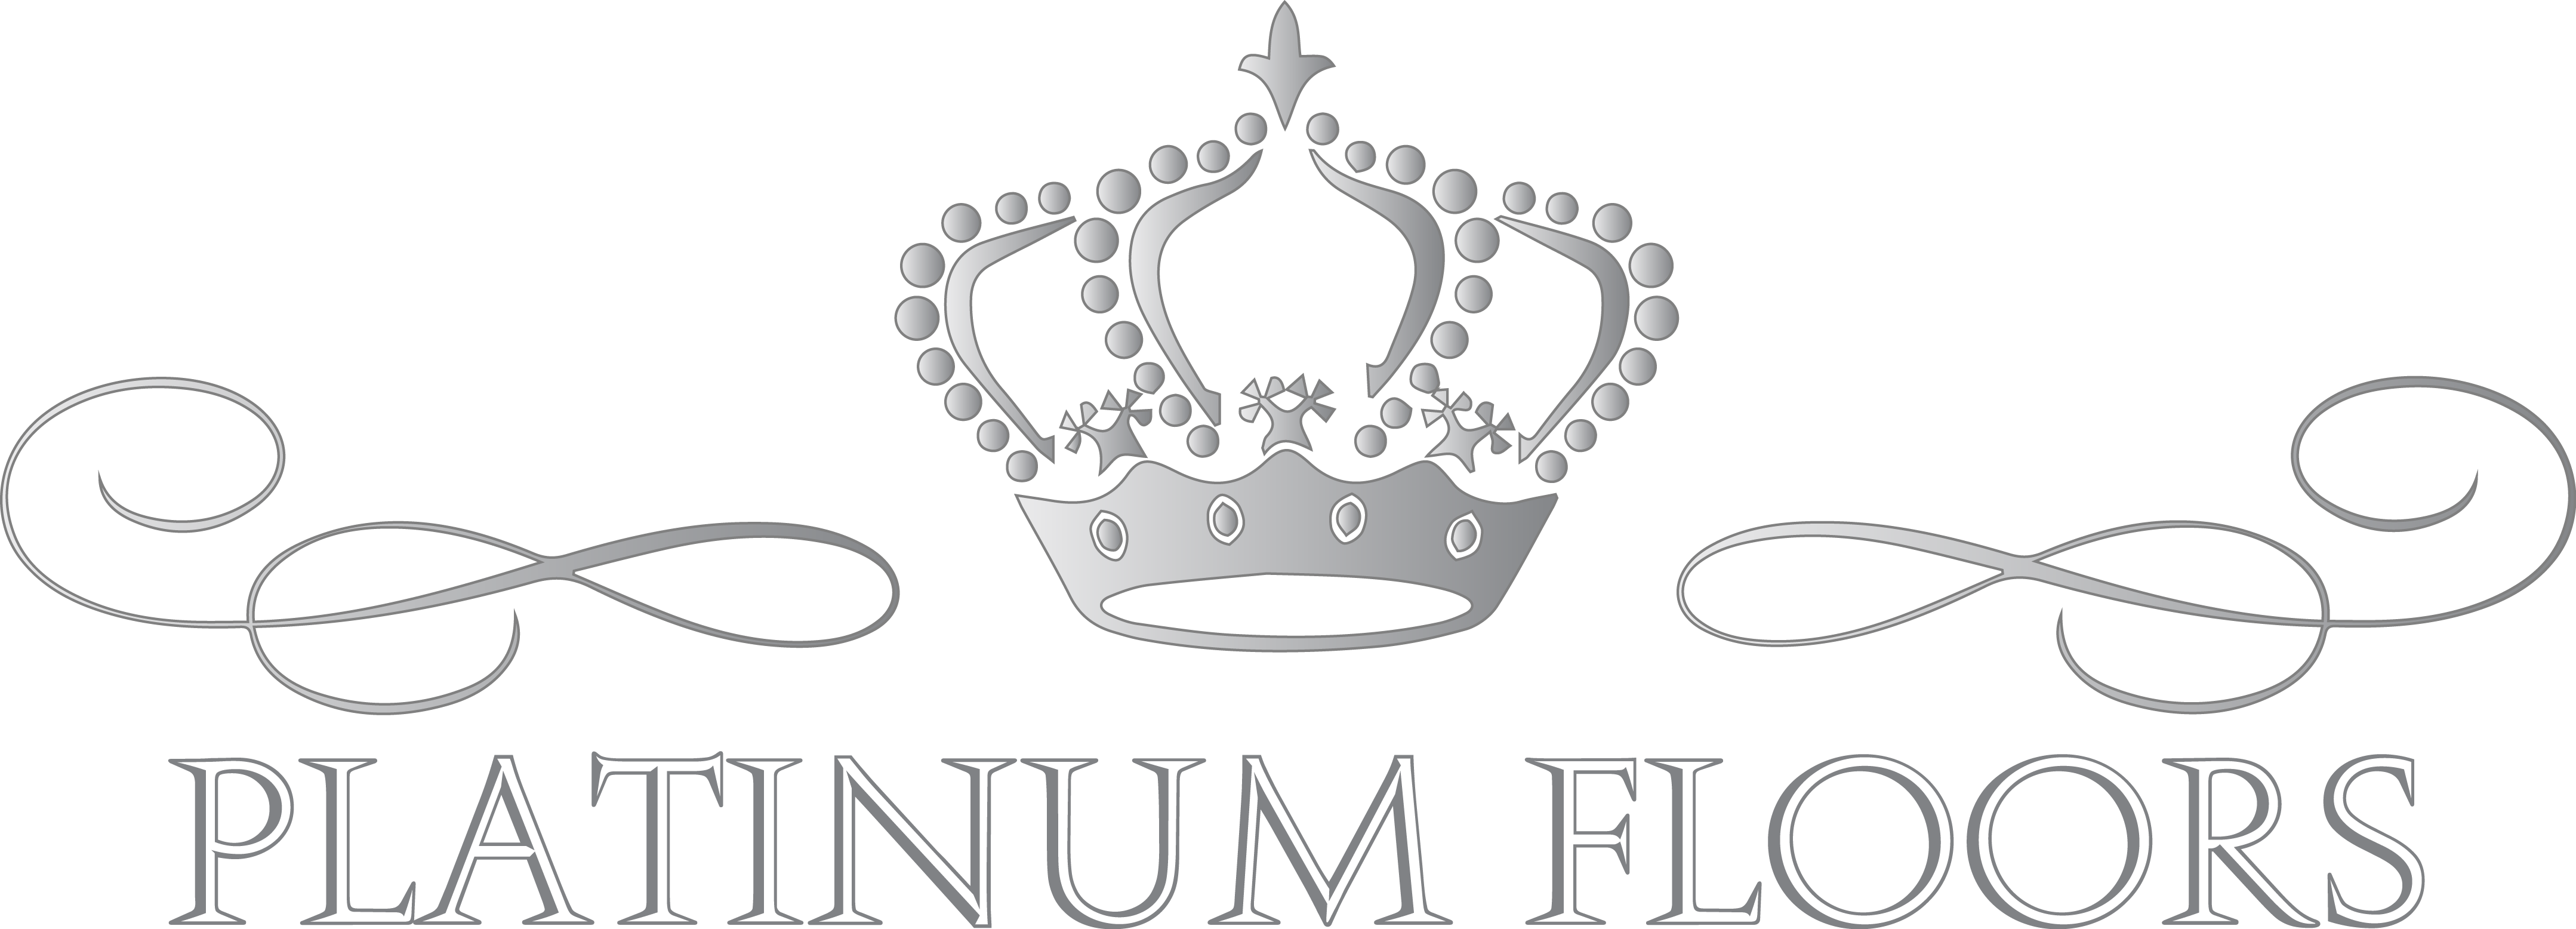 Platinum Floors, Inc. Logo